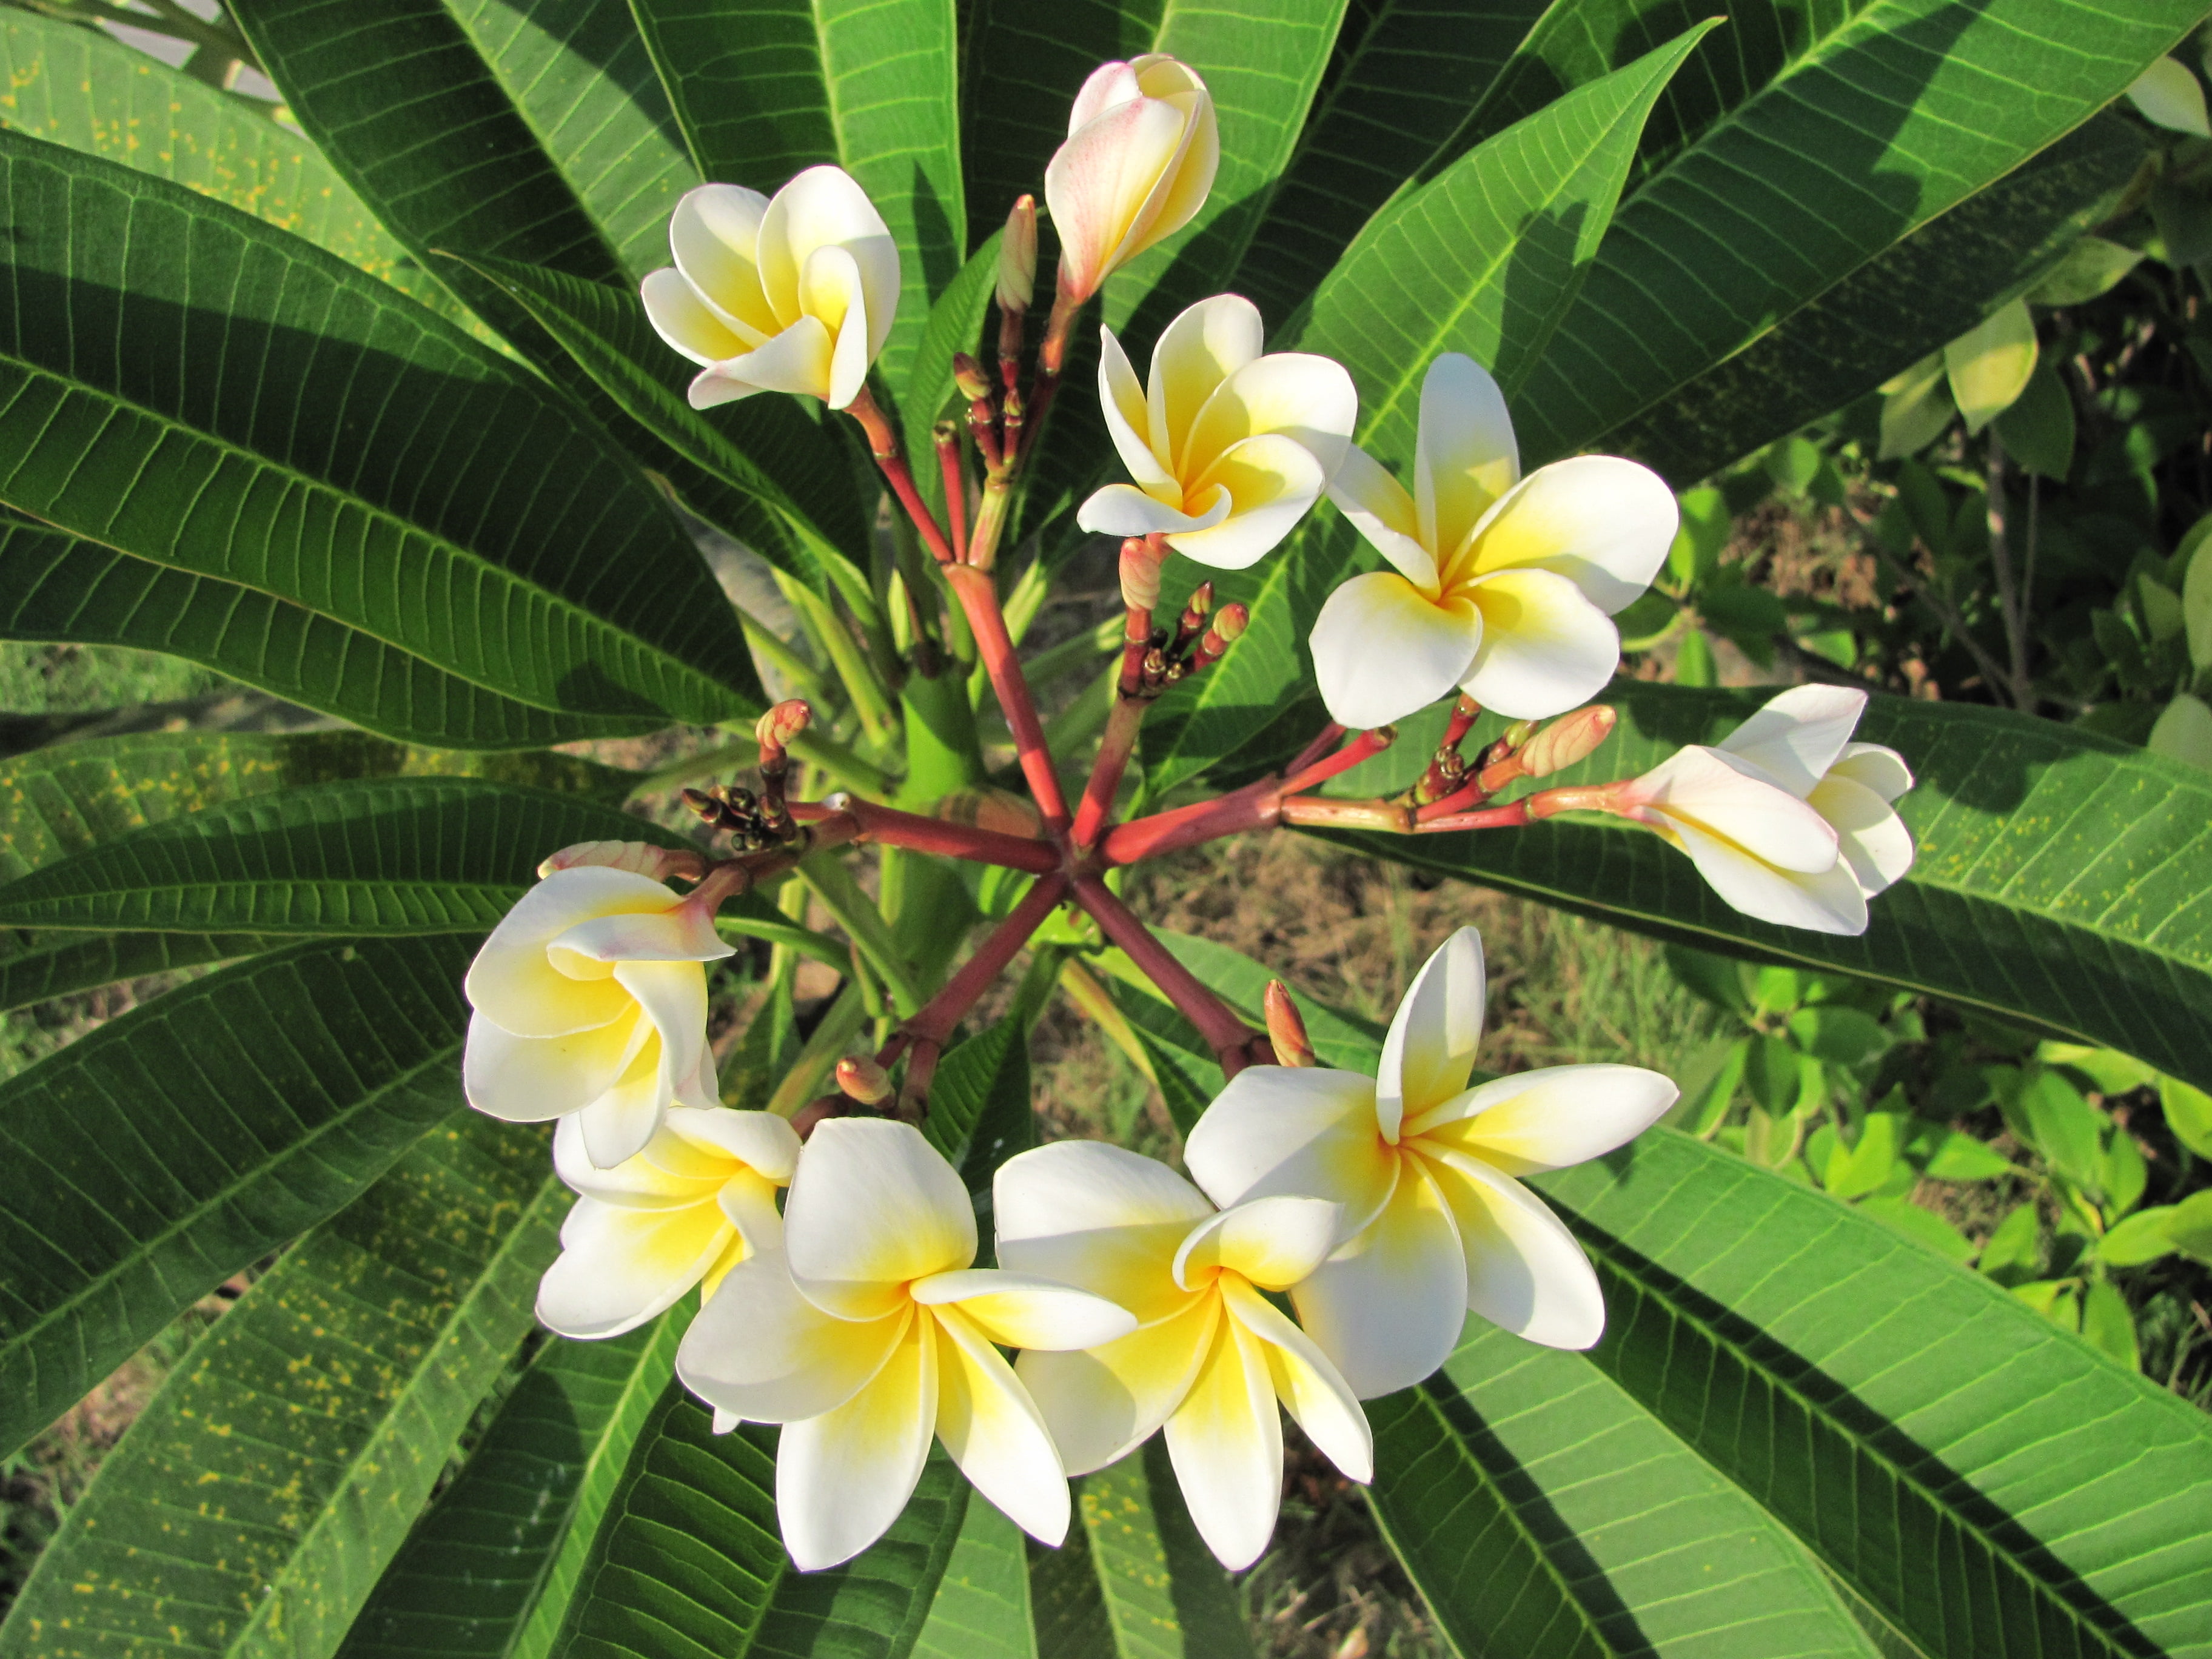 white-and-yellow plumeria flowers, thailand, fan, frangipani